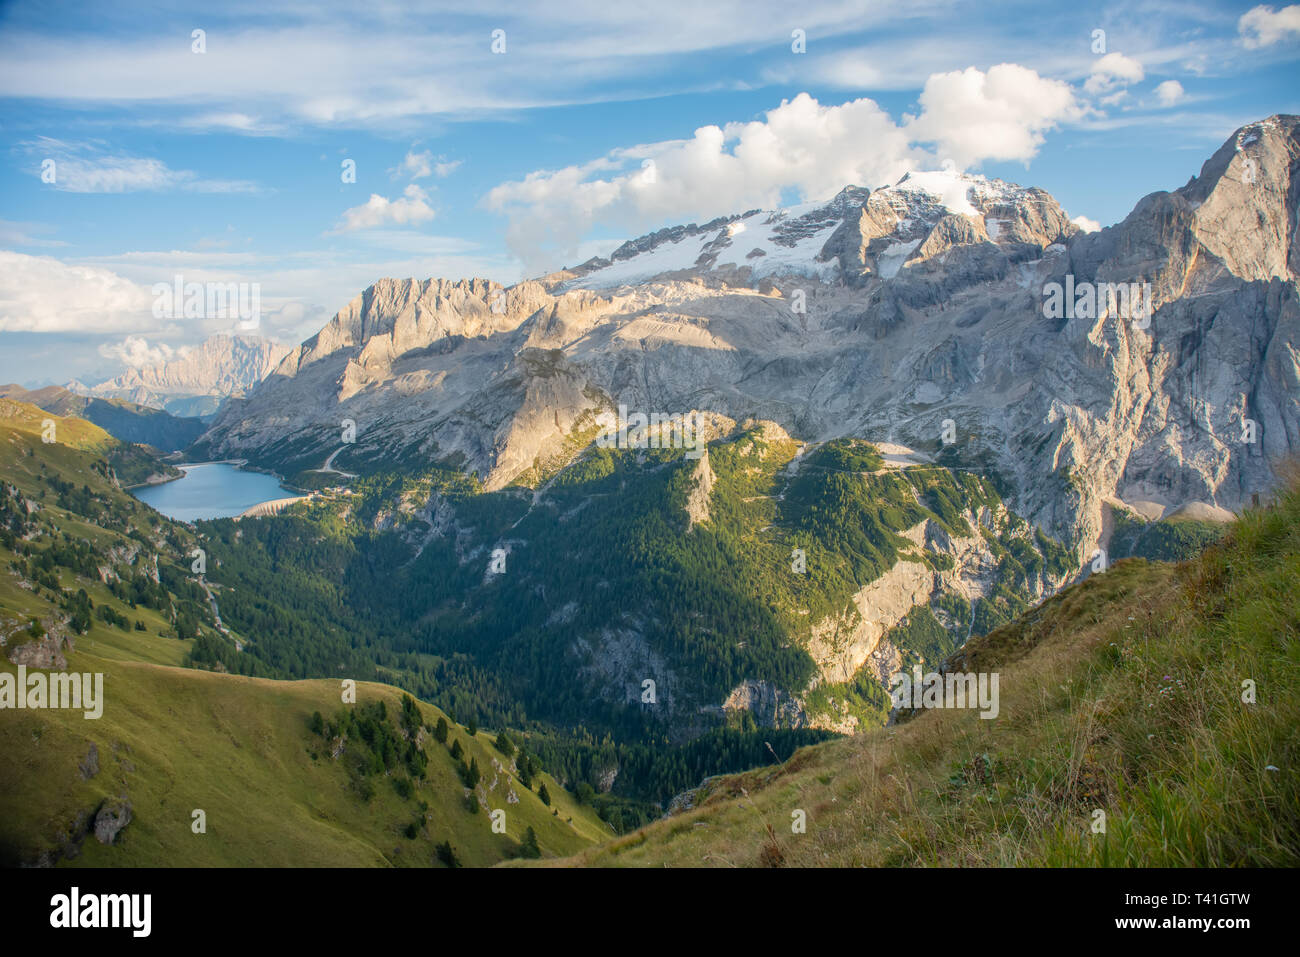 La montagne et lac Marmolada col Fedaia. Marmolada est la plus haute montagne des Dolomites, située au nord-est de l'Italie. Banque D'Images